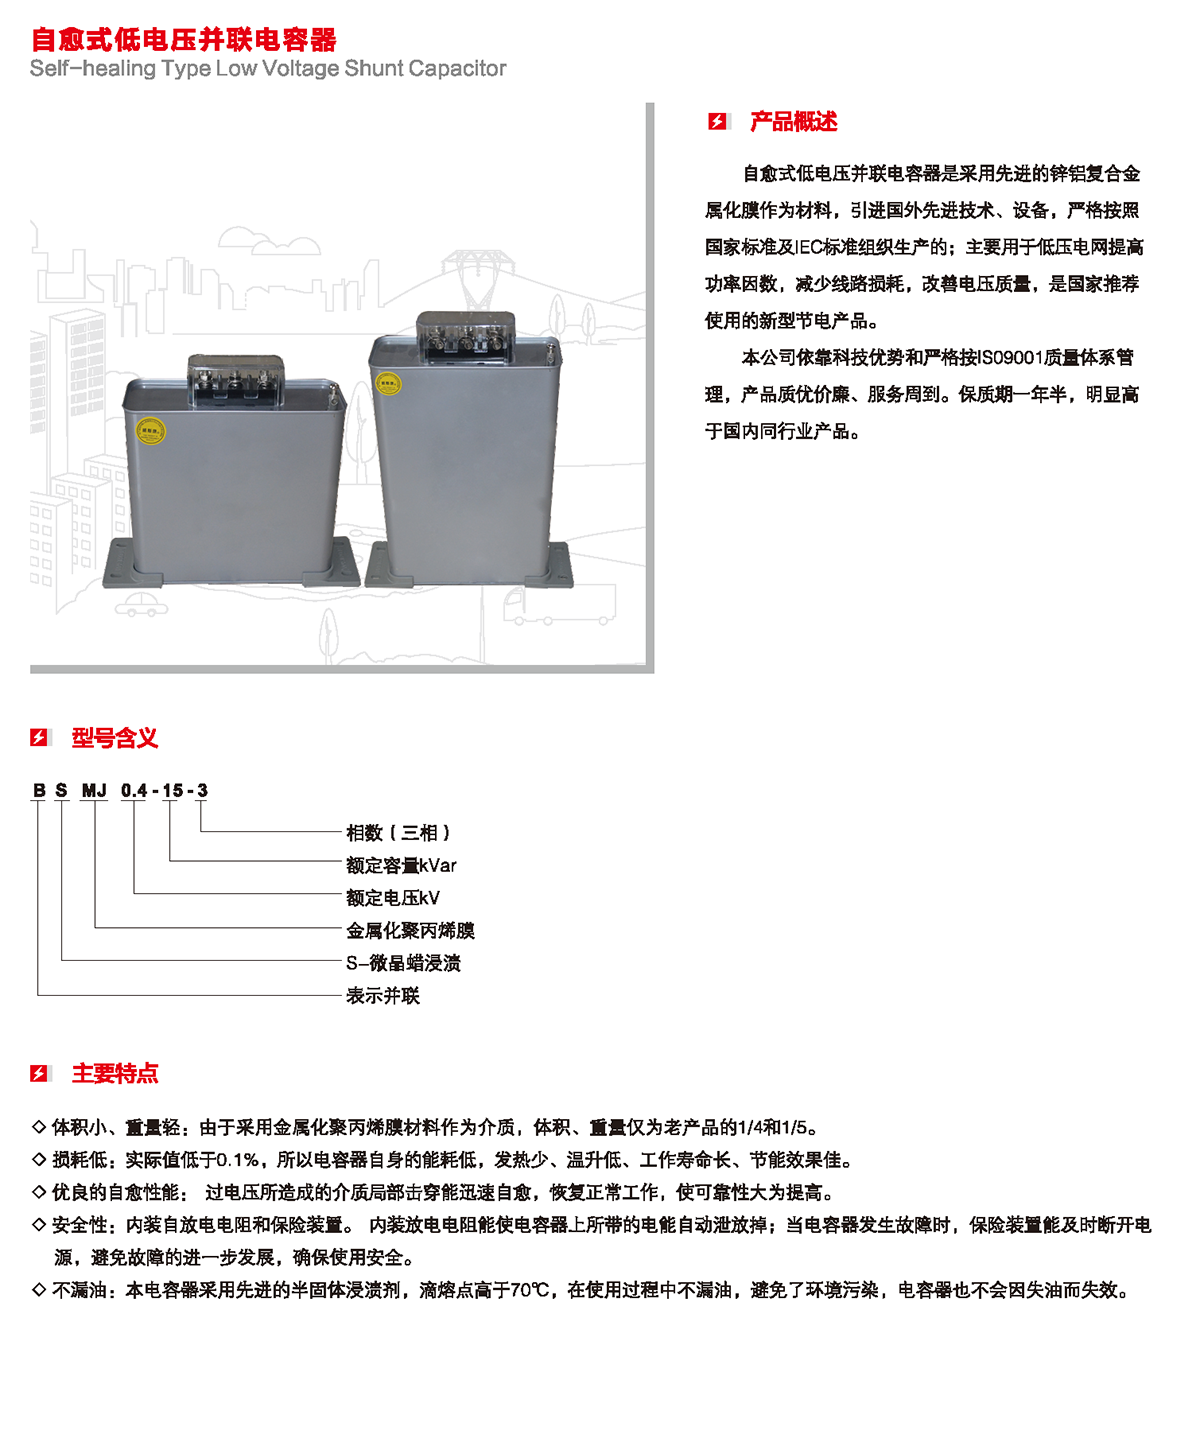 自愈式低电压并联电容器产品概述、型号含义、主要特点